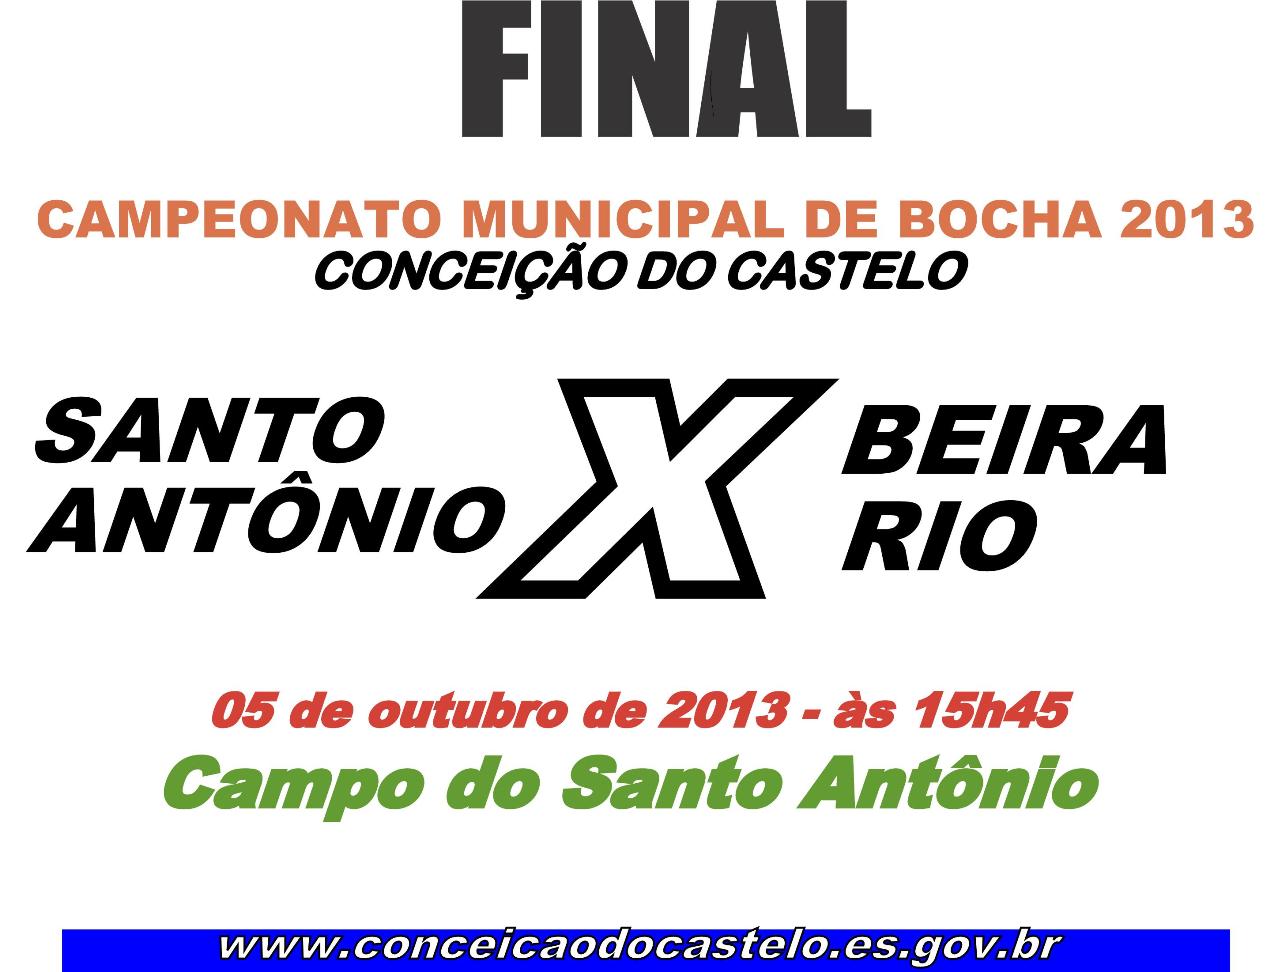 Beira Rio e Santo Antônio empatam no primeiro jogo da final e promete fortes emoções para jogo de volta da grande final